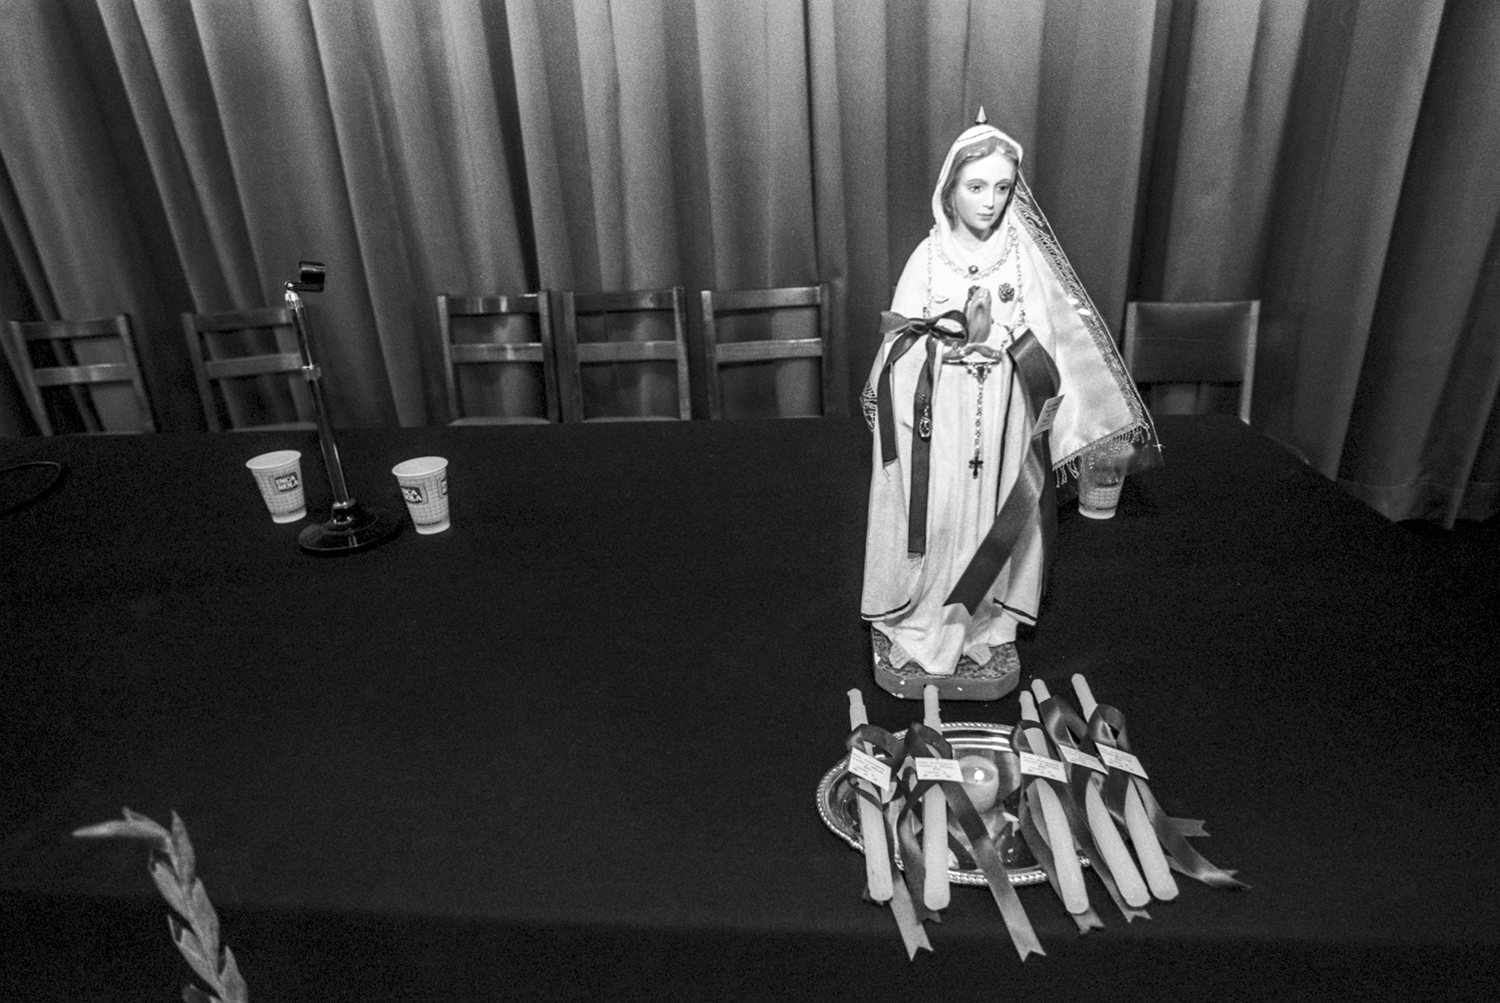 Octubre, 1996.Una pequeña figura de la Virgen de la Puerta junto a velas se observan en una mesa luego de una charla sobre la vida con el VIH en el auditorio de un centro escolar en Jesús María, Lima.